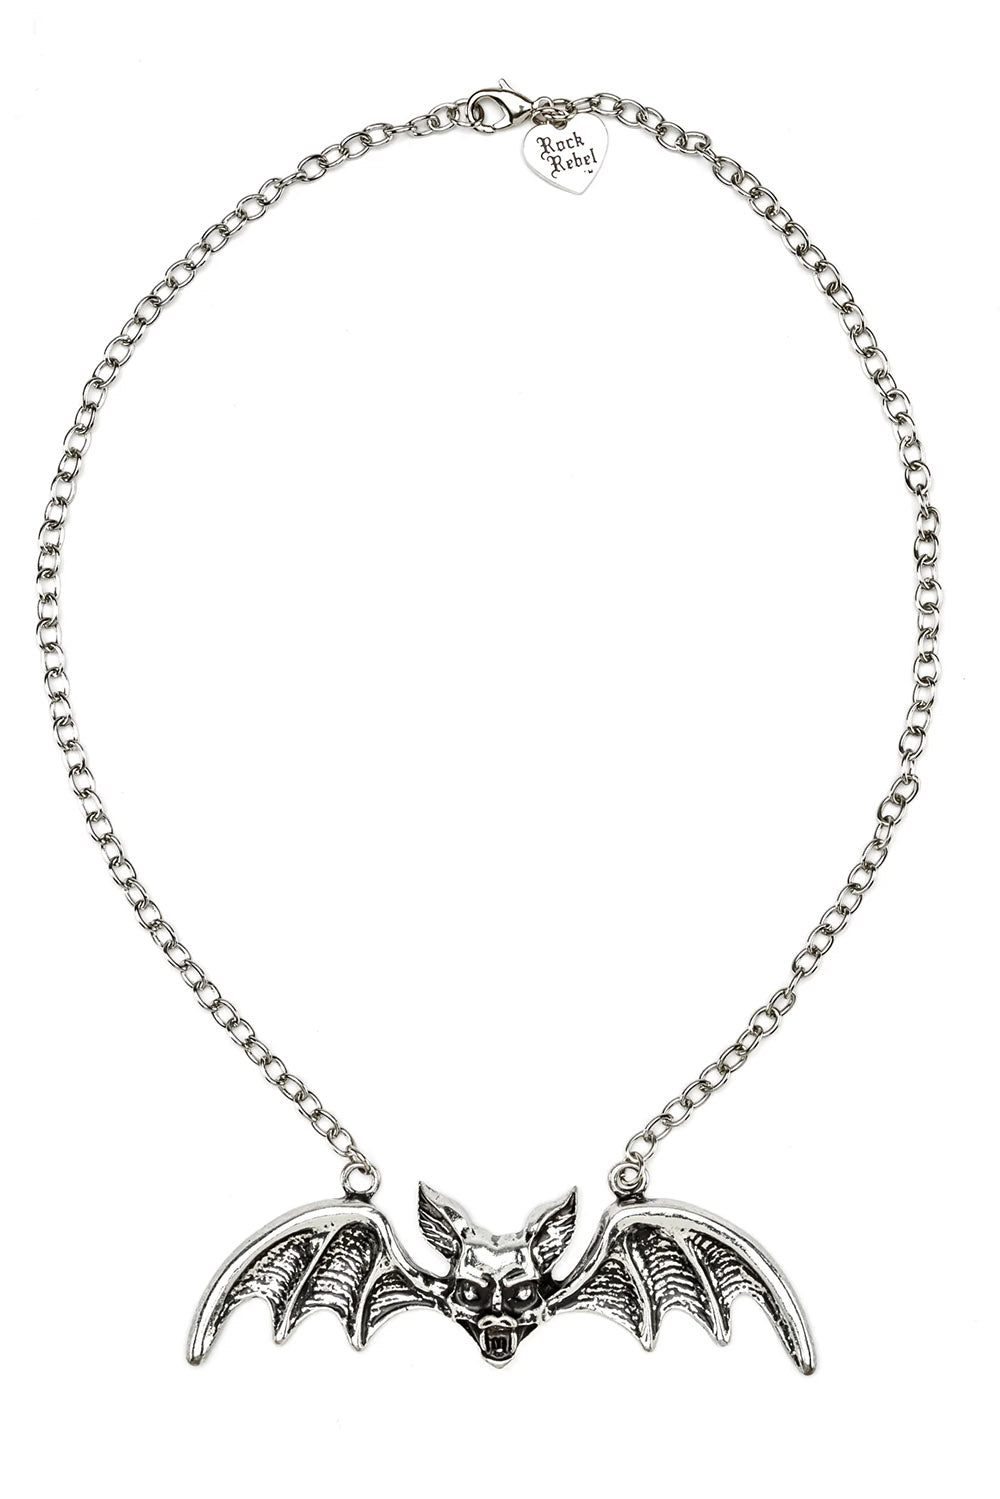 Lily Munster Bat Pendant Necklace [CHROME]